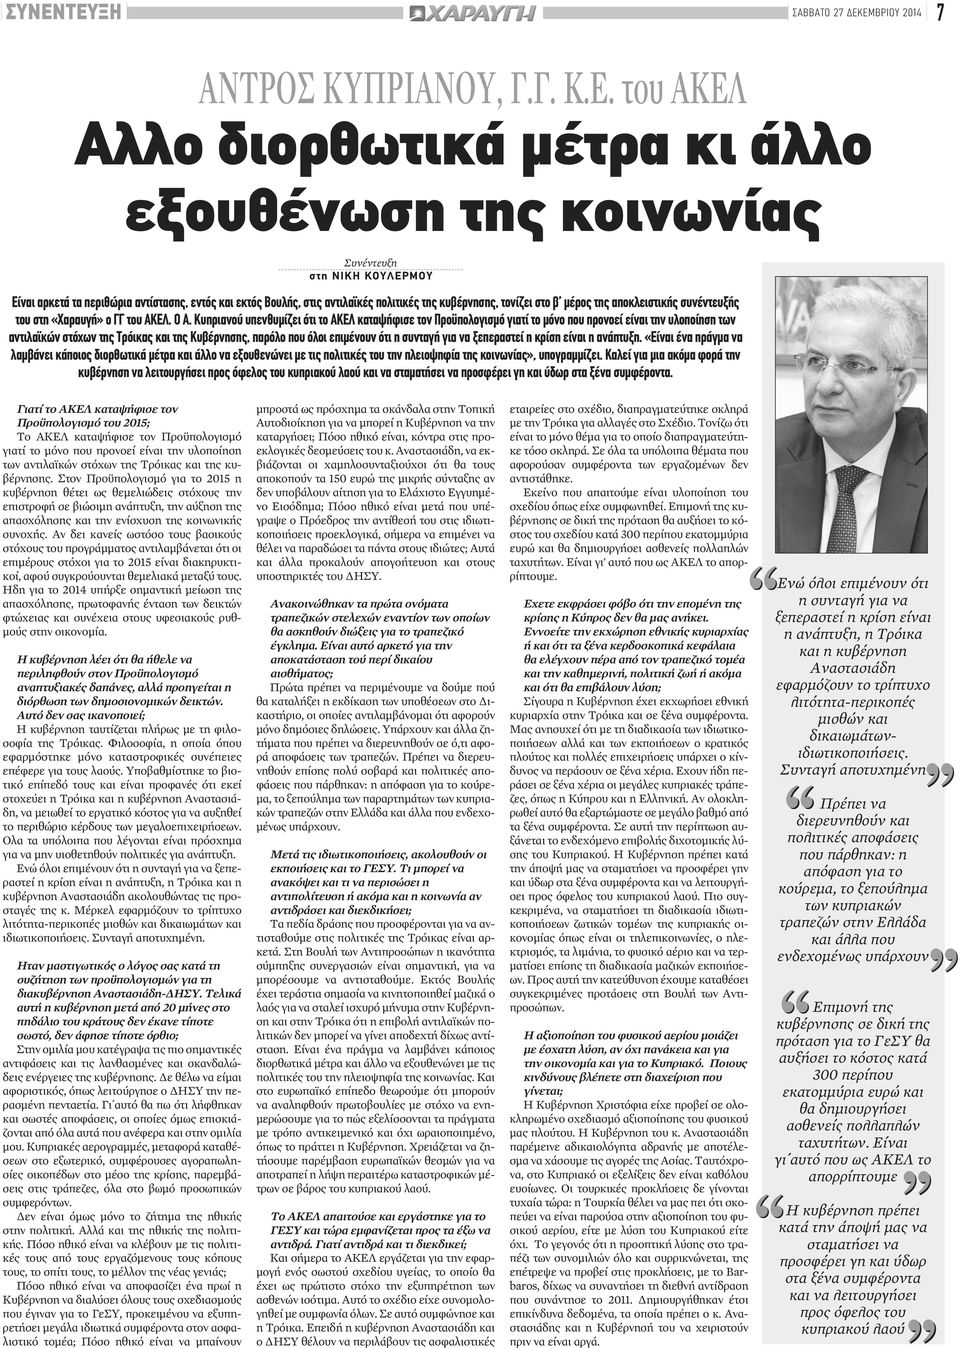 Κυπριανού υπενθυμίζει ότι το ΑΚΕΛ καταψήφισε τον Προϋπολογισμό γιατί το μόνο που προνοεί είναι την υλοποίηση των αντιλαϊκών στόχων της Τρόικας και της Κυβέρνησης, παρόλο που όλοι επιμένουν ότι η